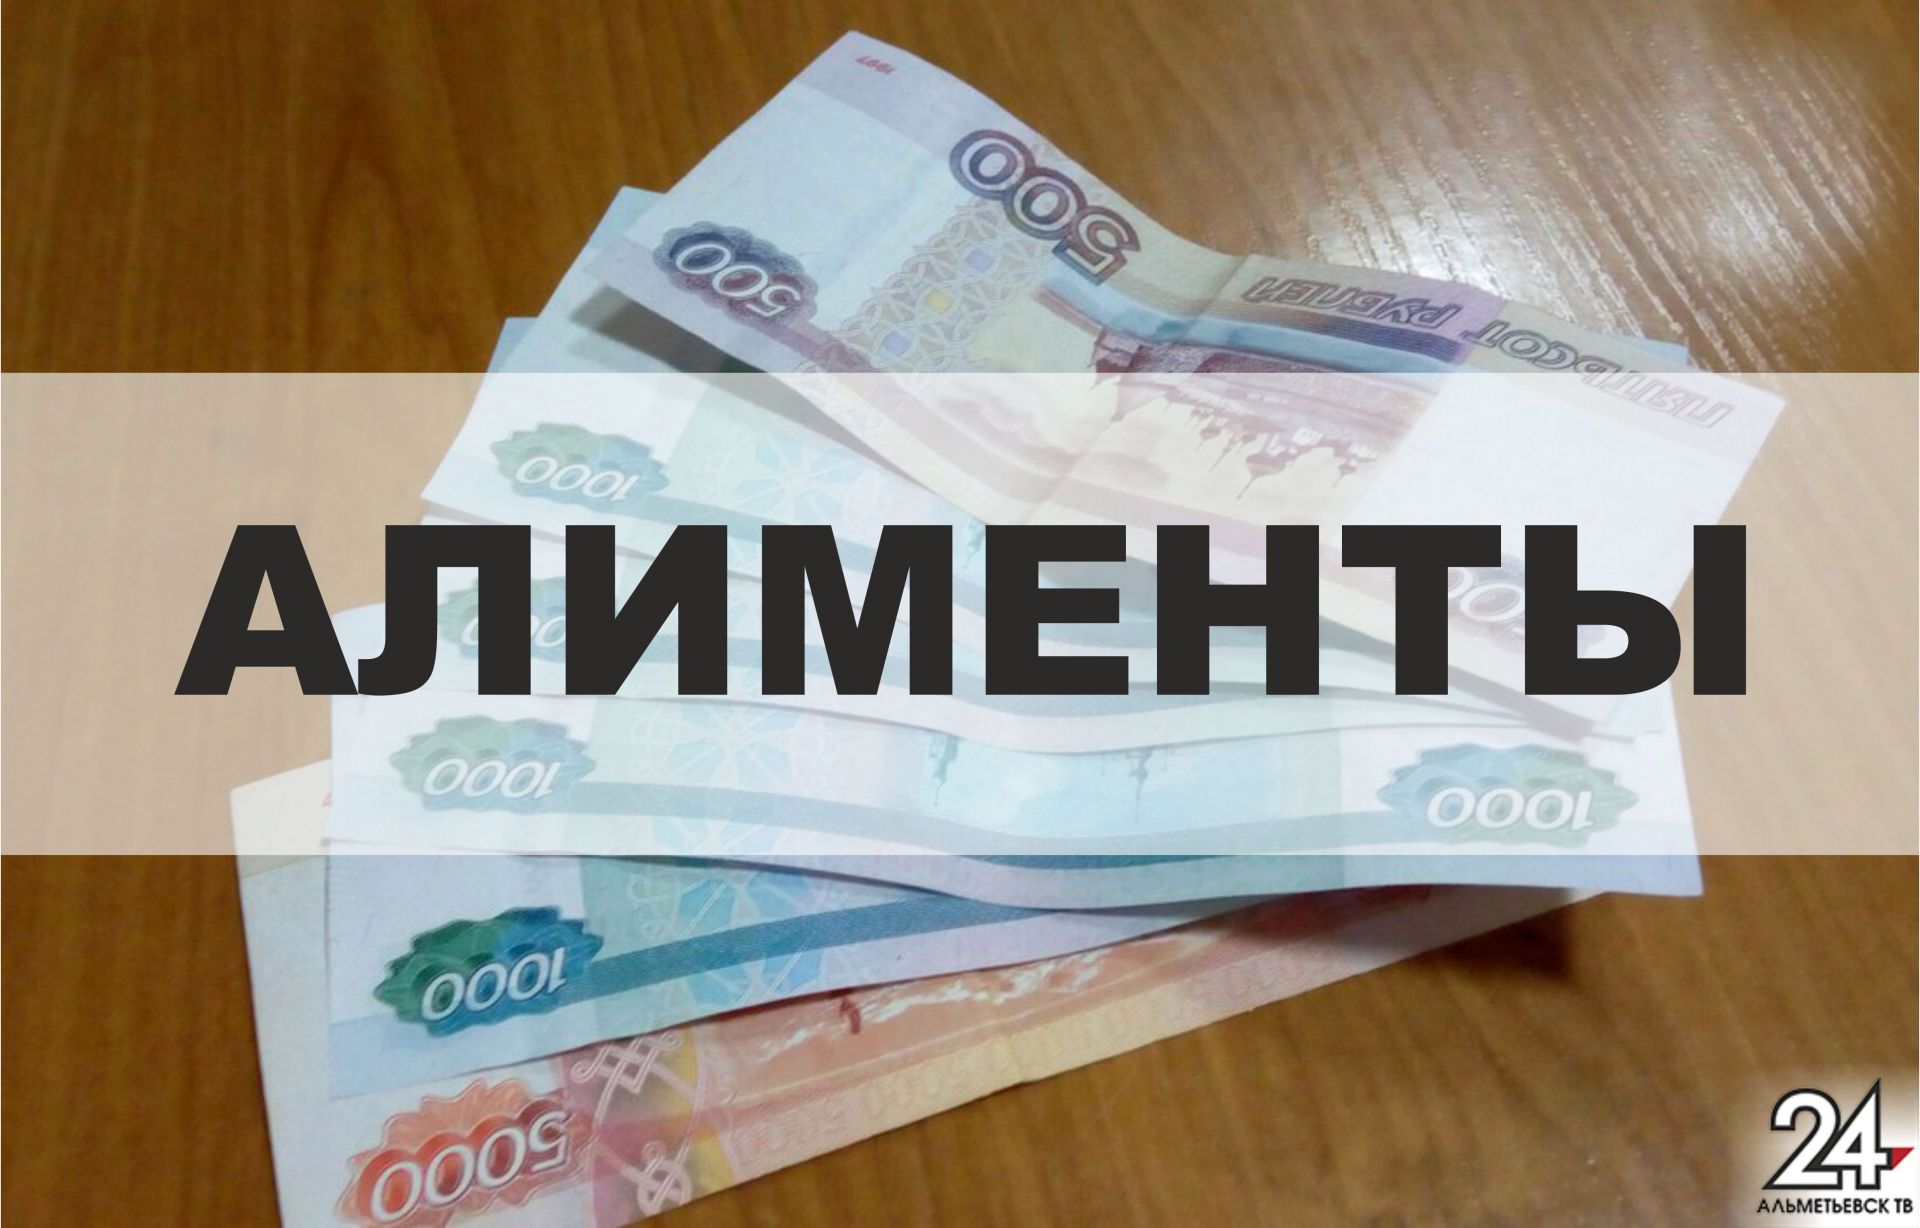 Альметьевец получил десять суток ареста за неуплату алиментов